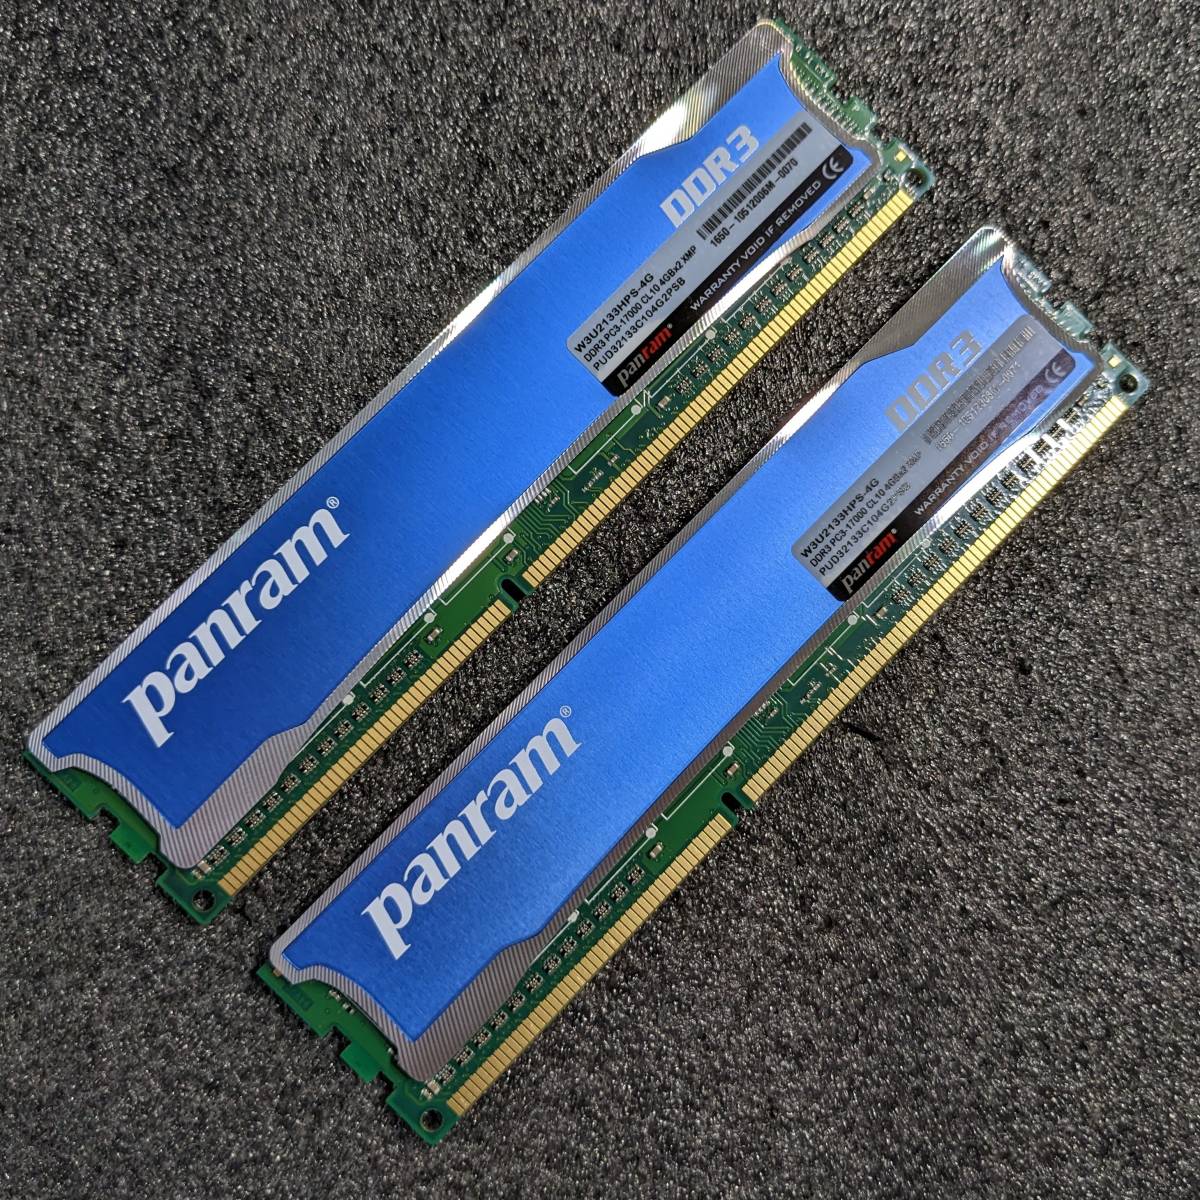 【ほぼ未使用】DDR3メモリ 8GB(4GB2枚組) CFD Panram W3U2133HPS-4G [DDR3-2133 PC3-17000]